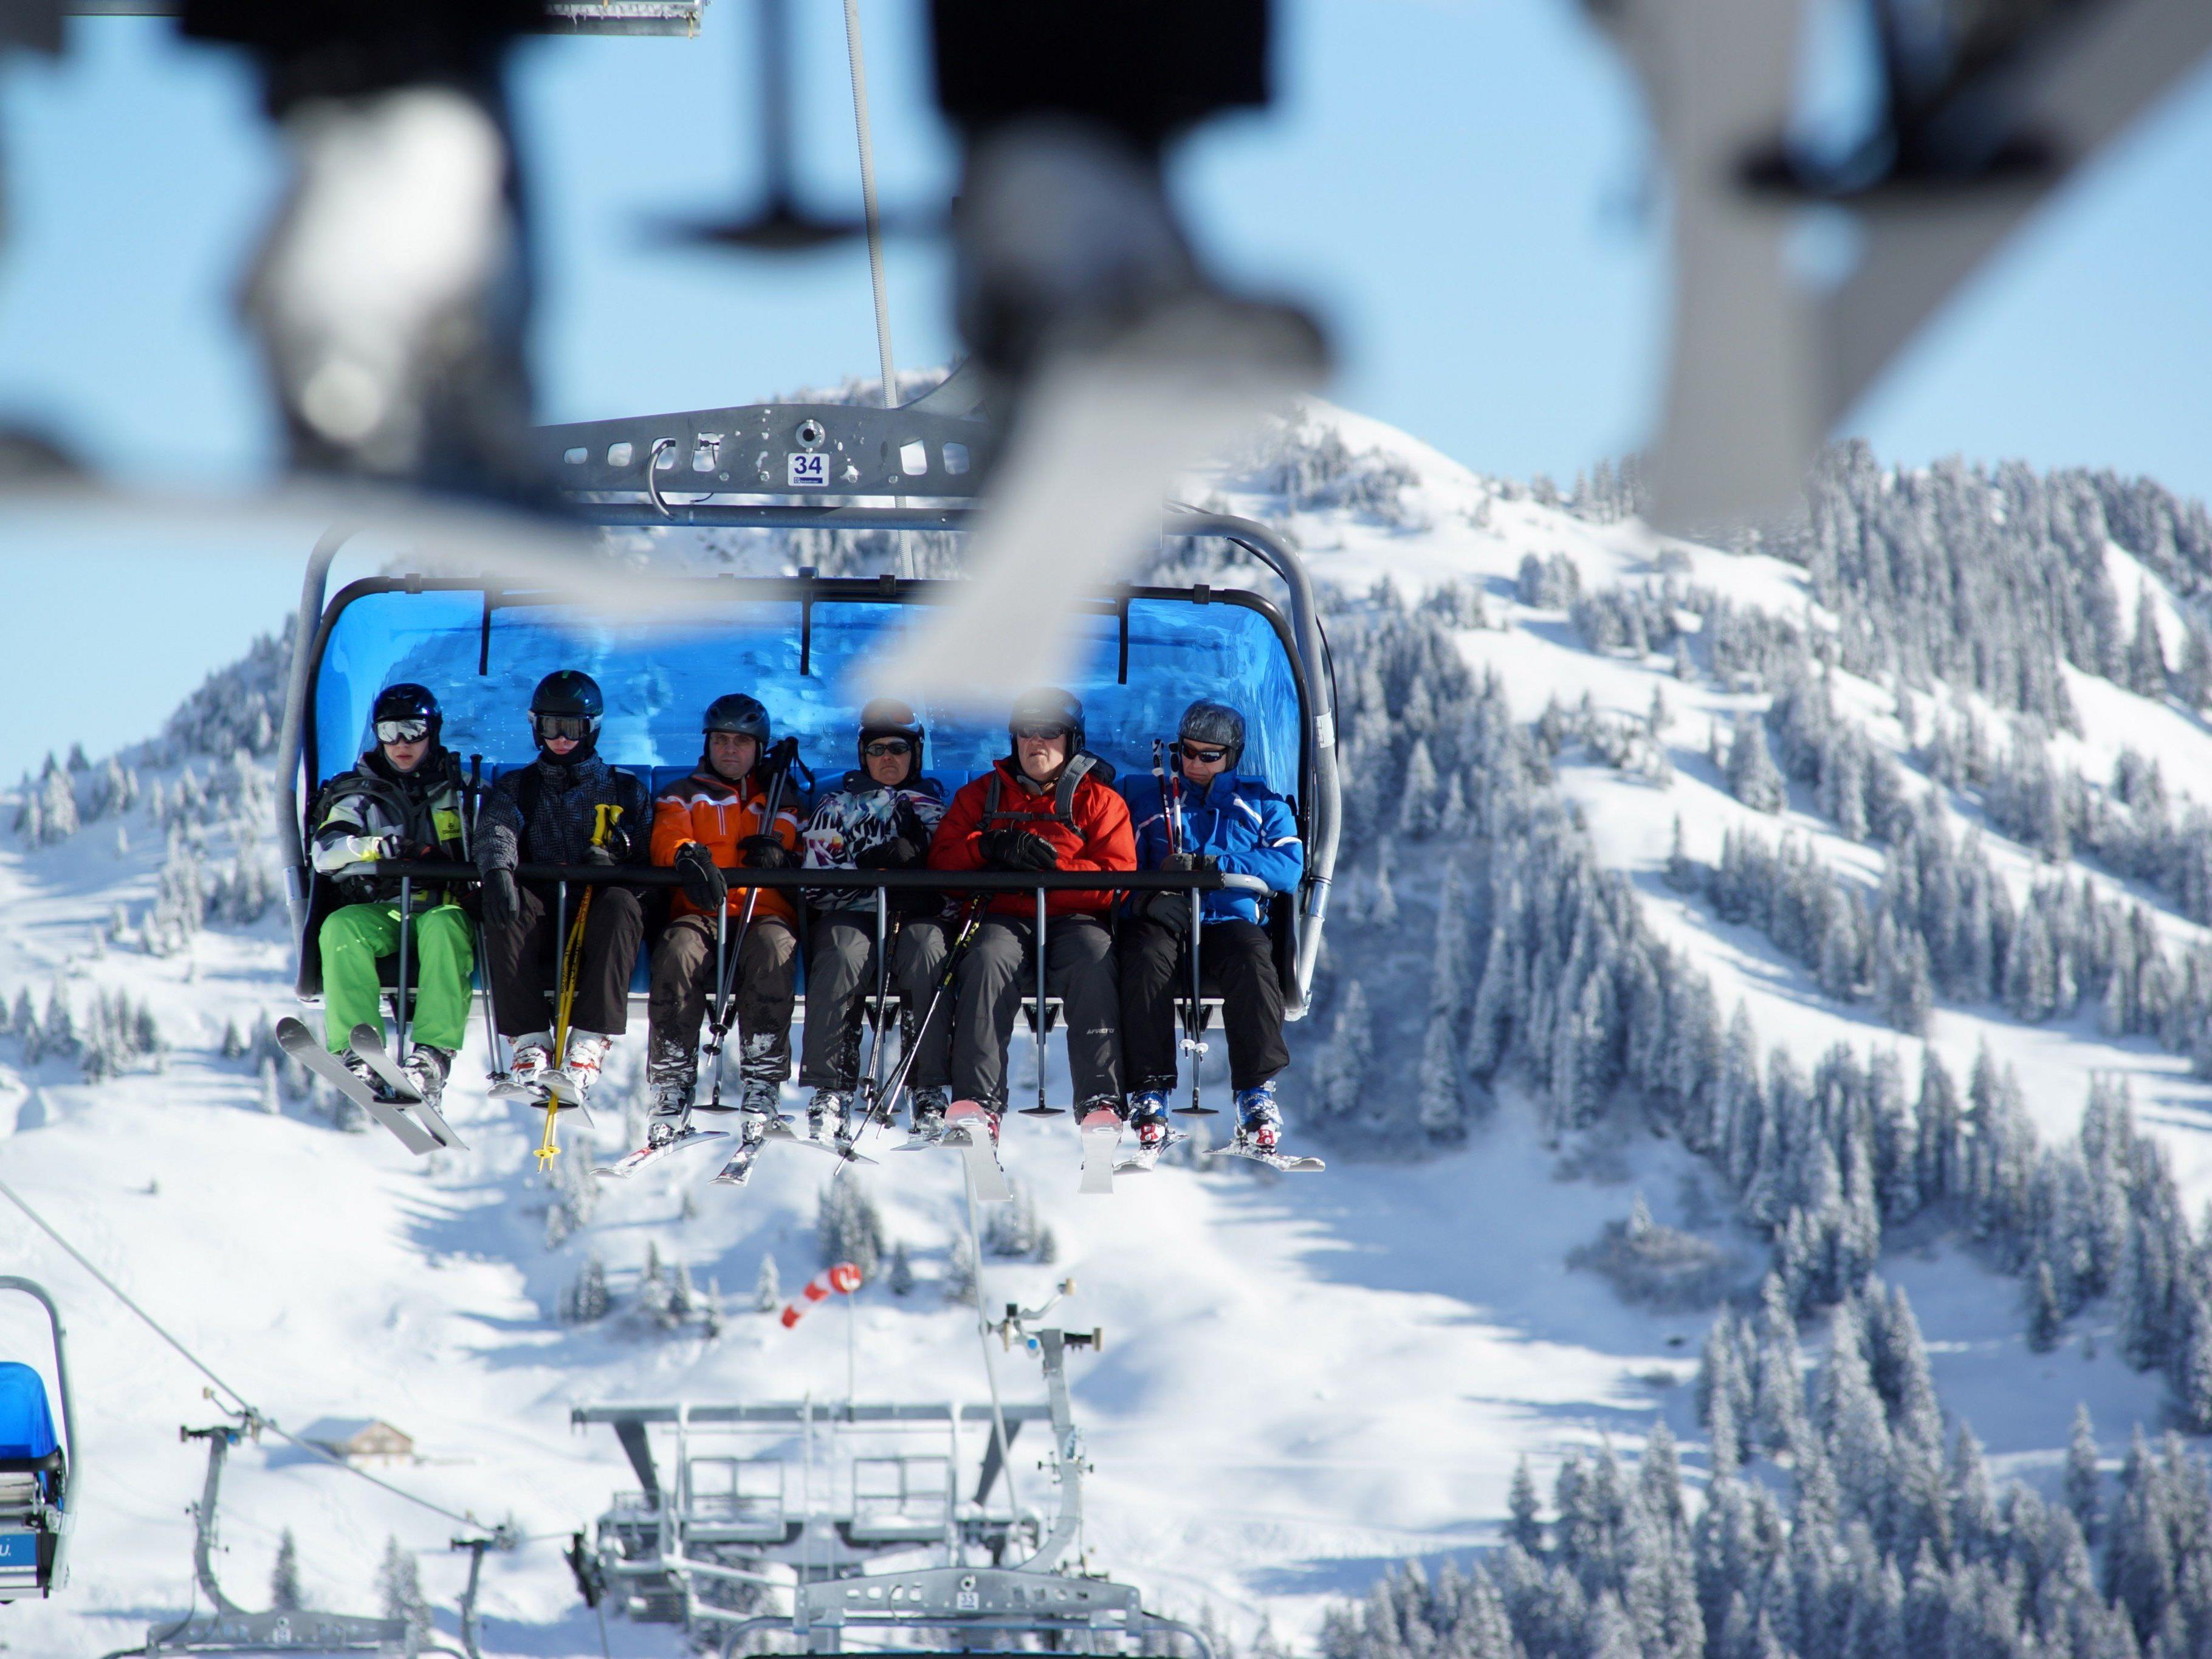 Endlich volle Skilifte: Schneefälle Anfang Jänner bringen Skisaison in Vorarlberg in Schwung.